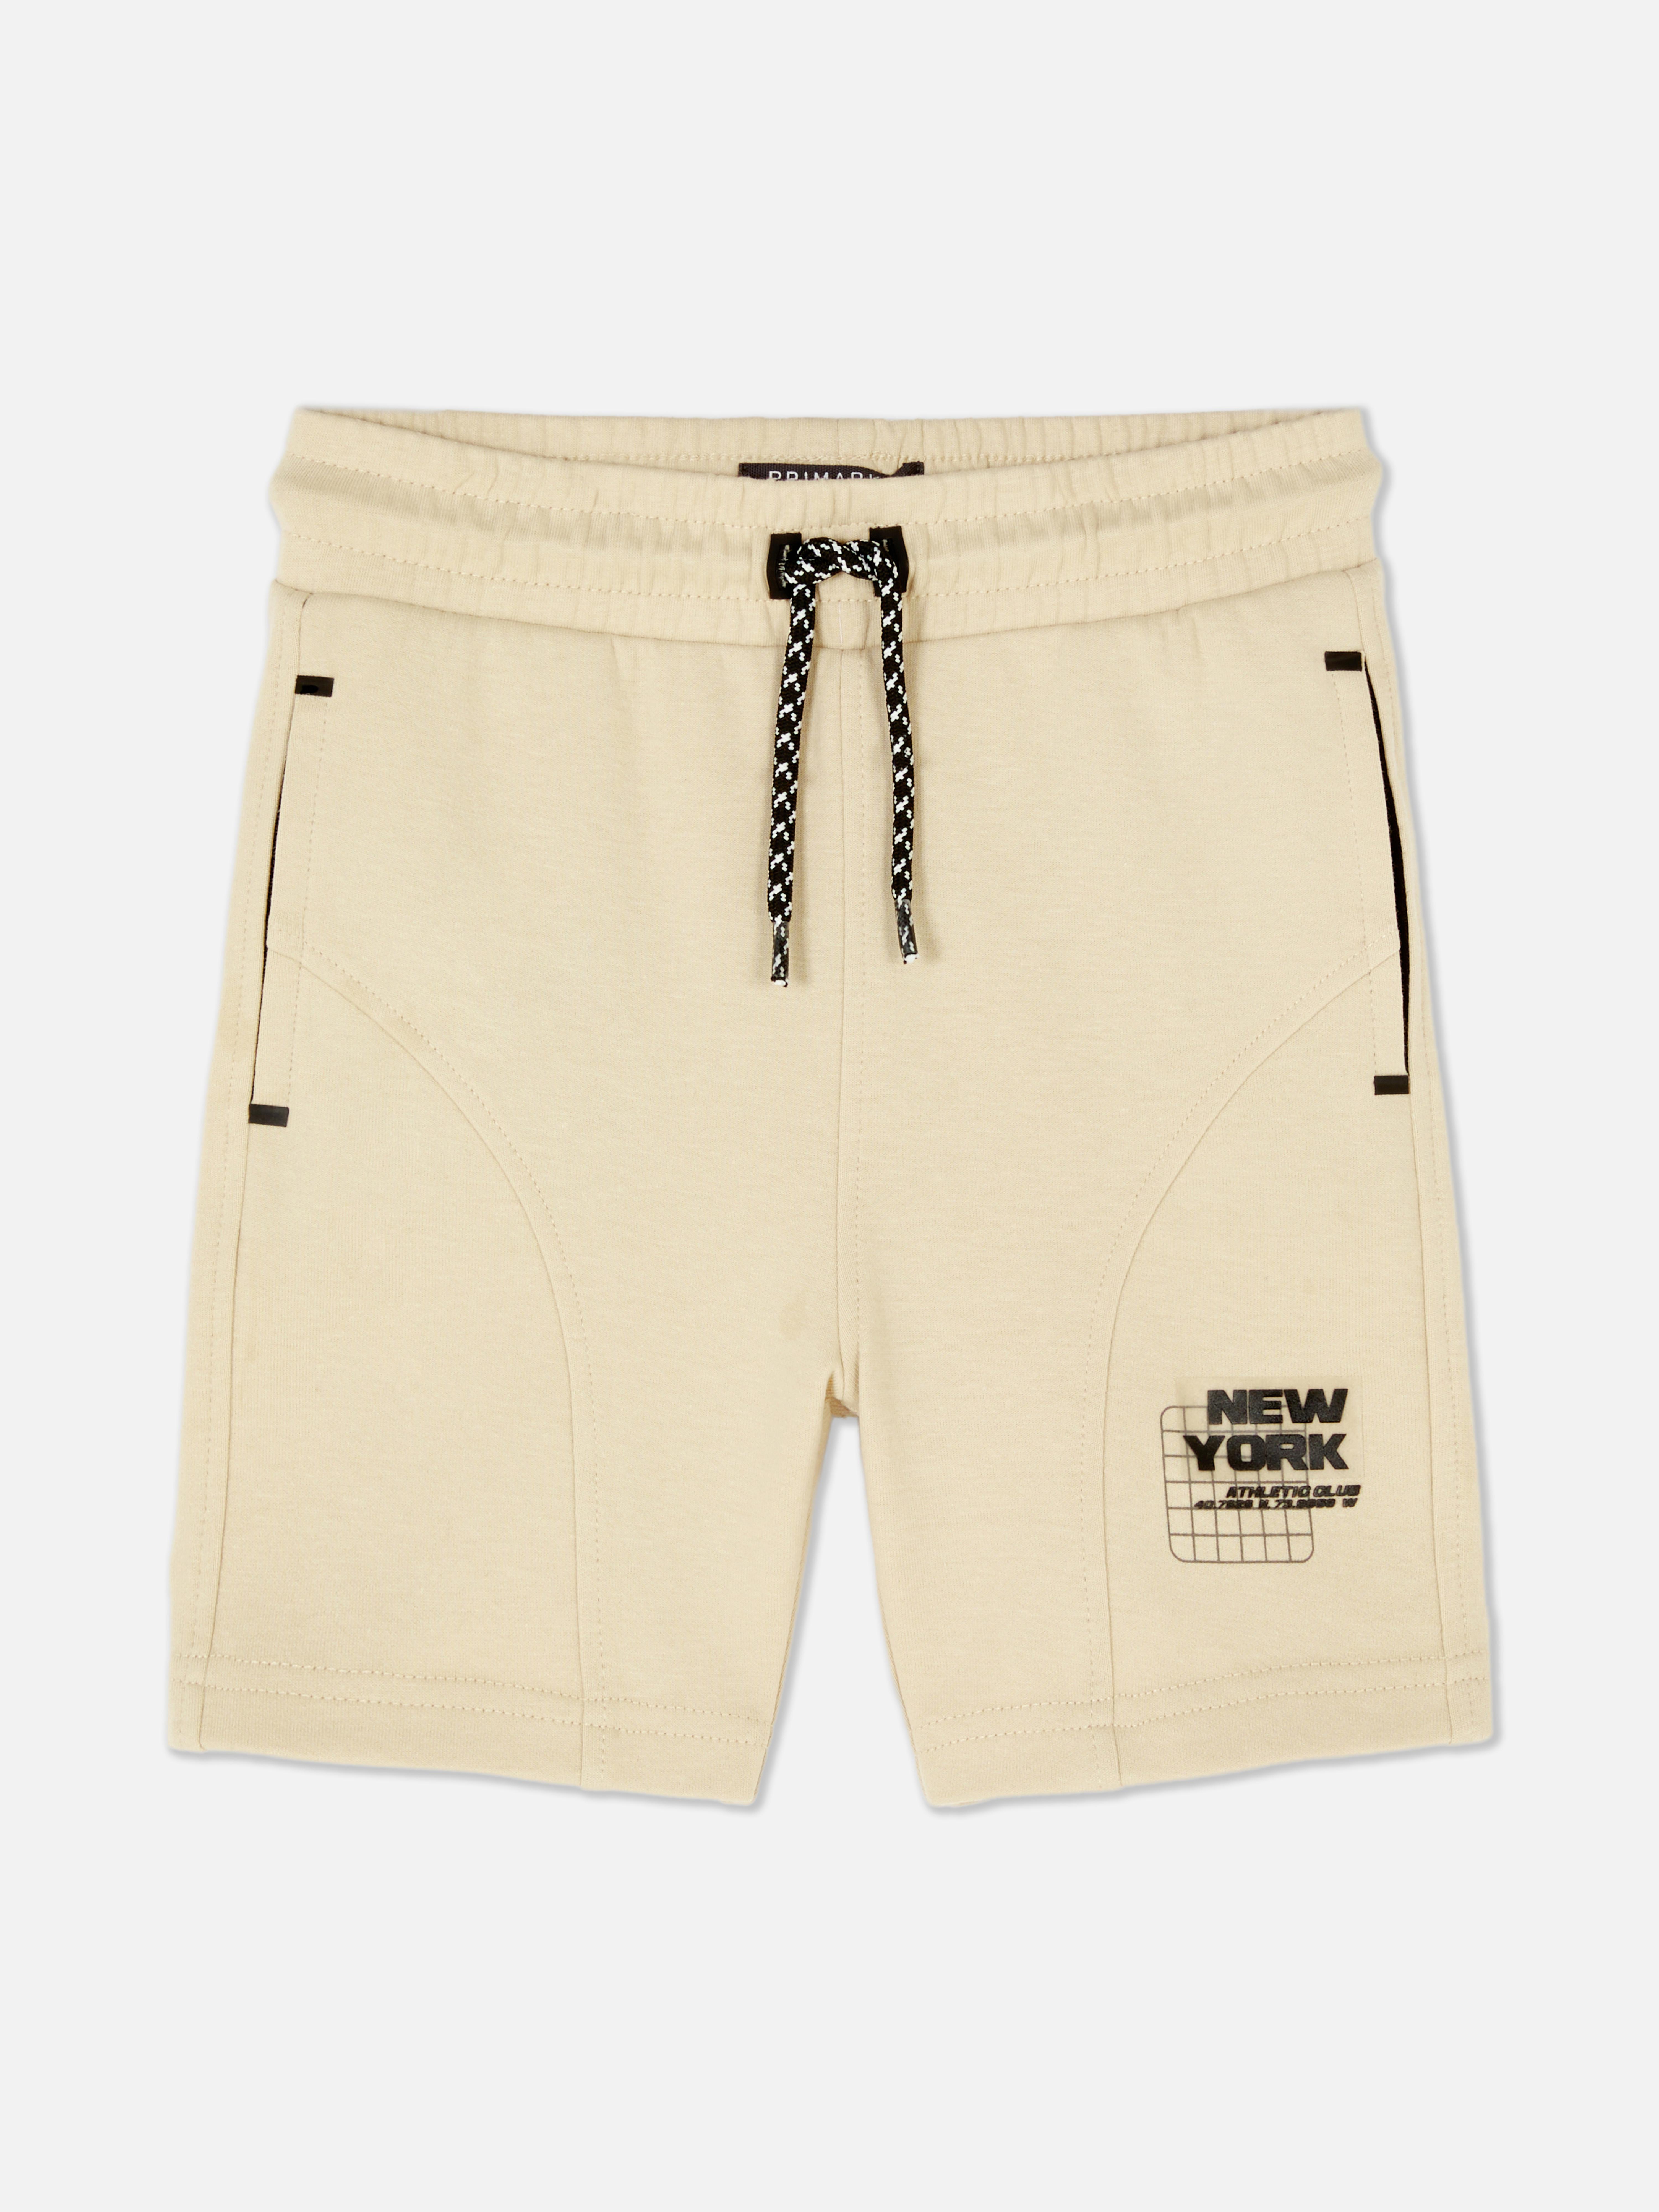 New York Drawstring Shorts